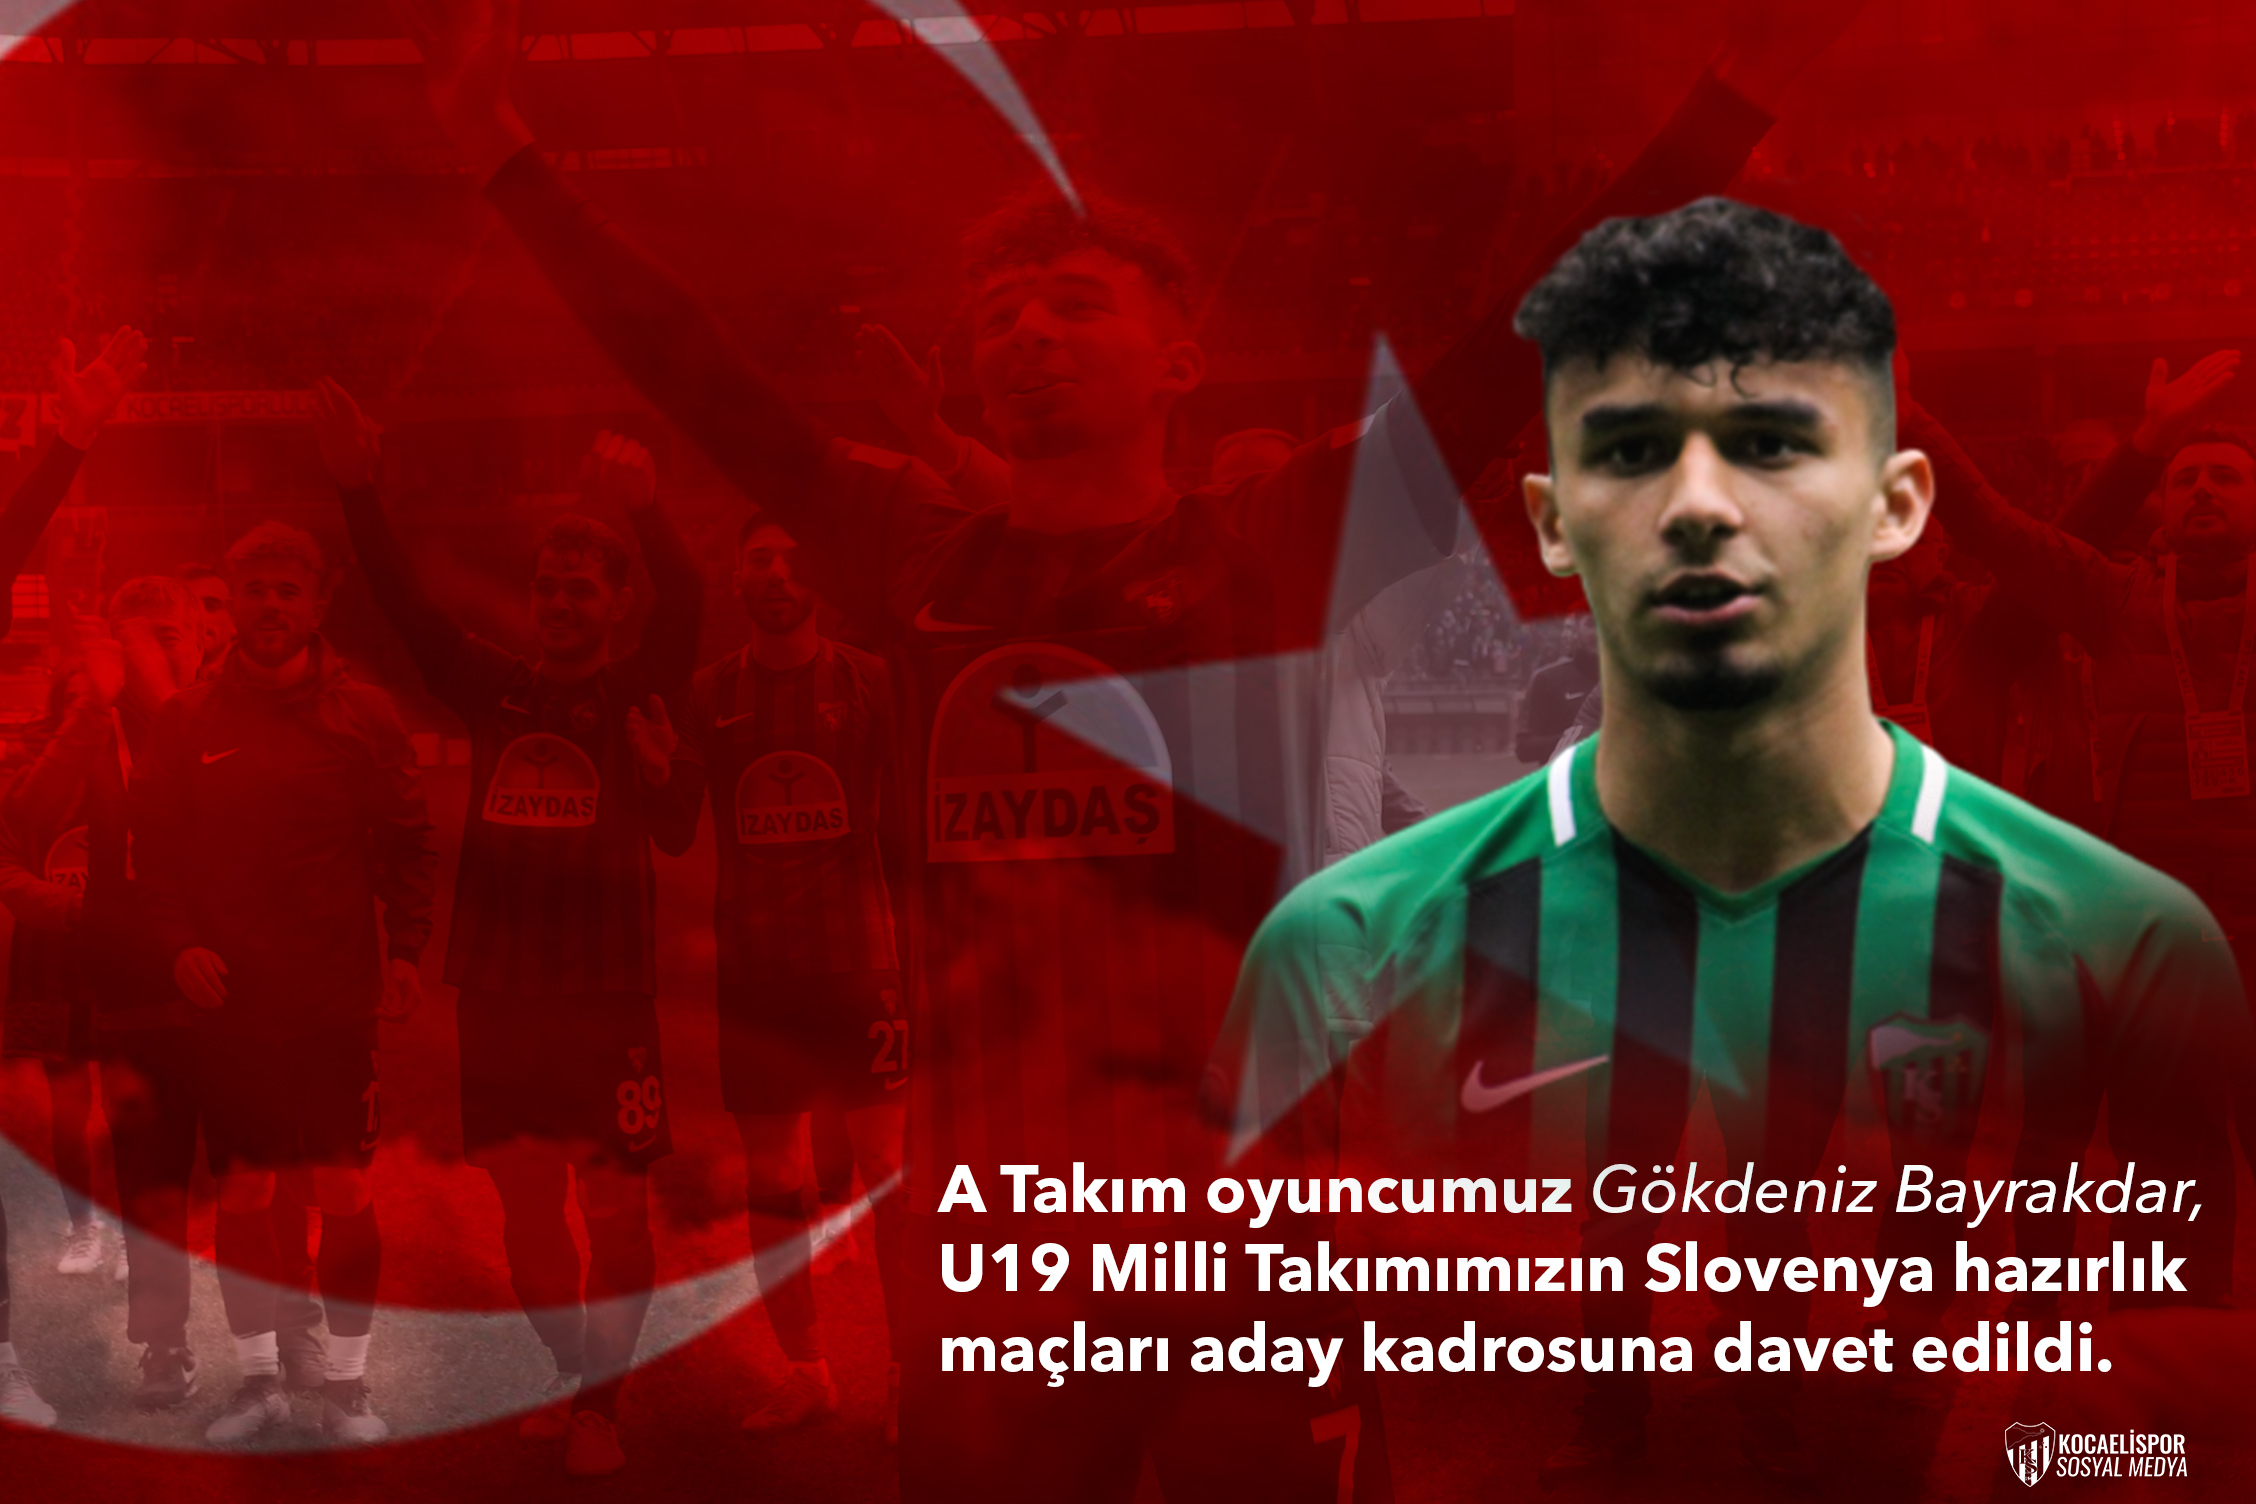 Gökdeniz Bayrakdar U19 Milli Takım Aday Kadrosunda!